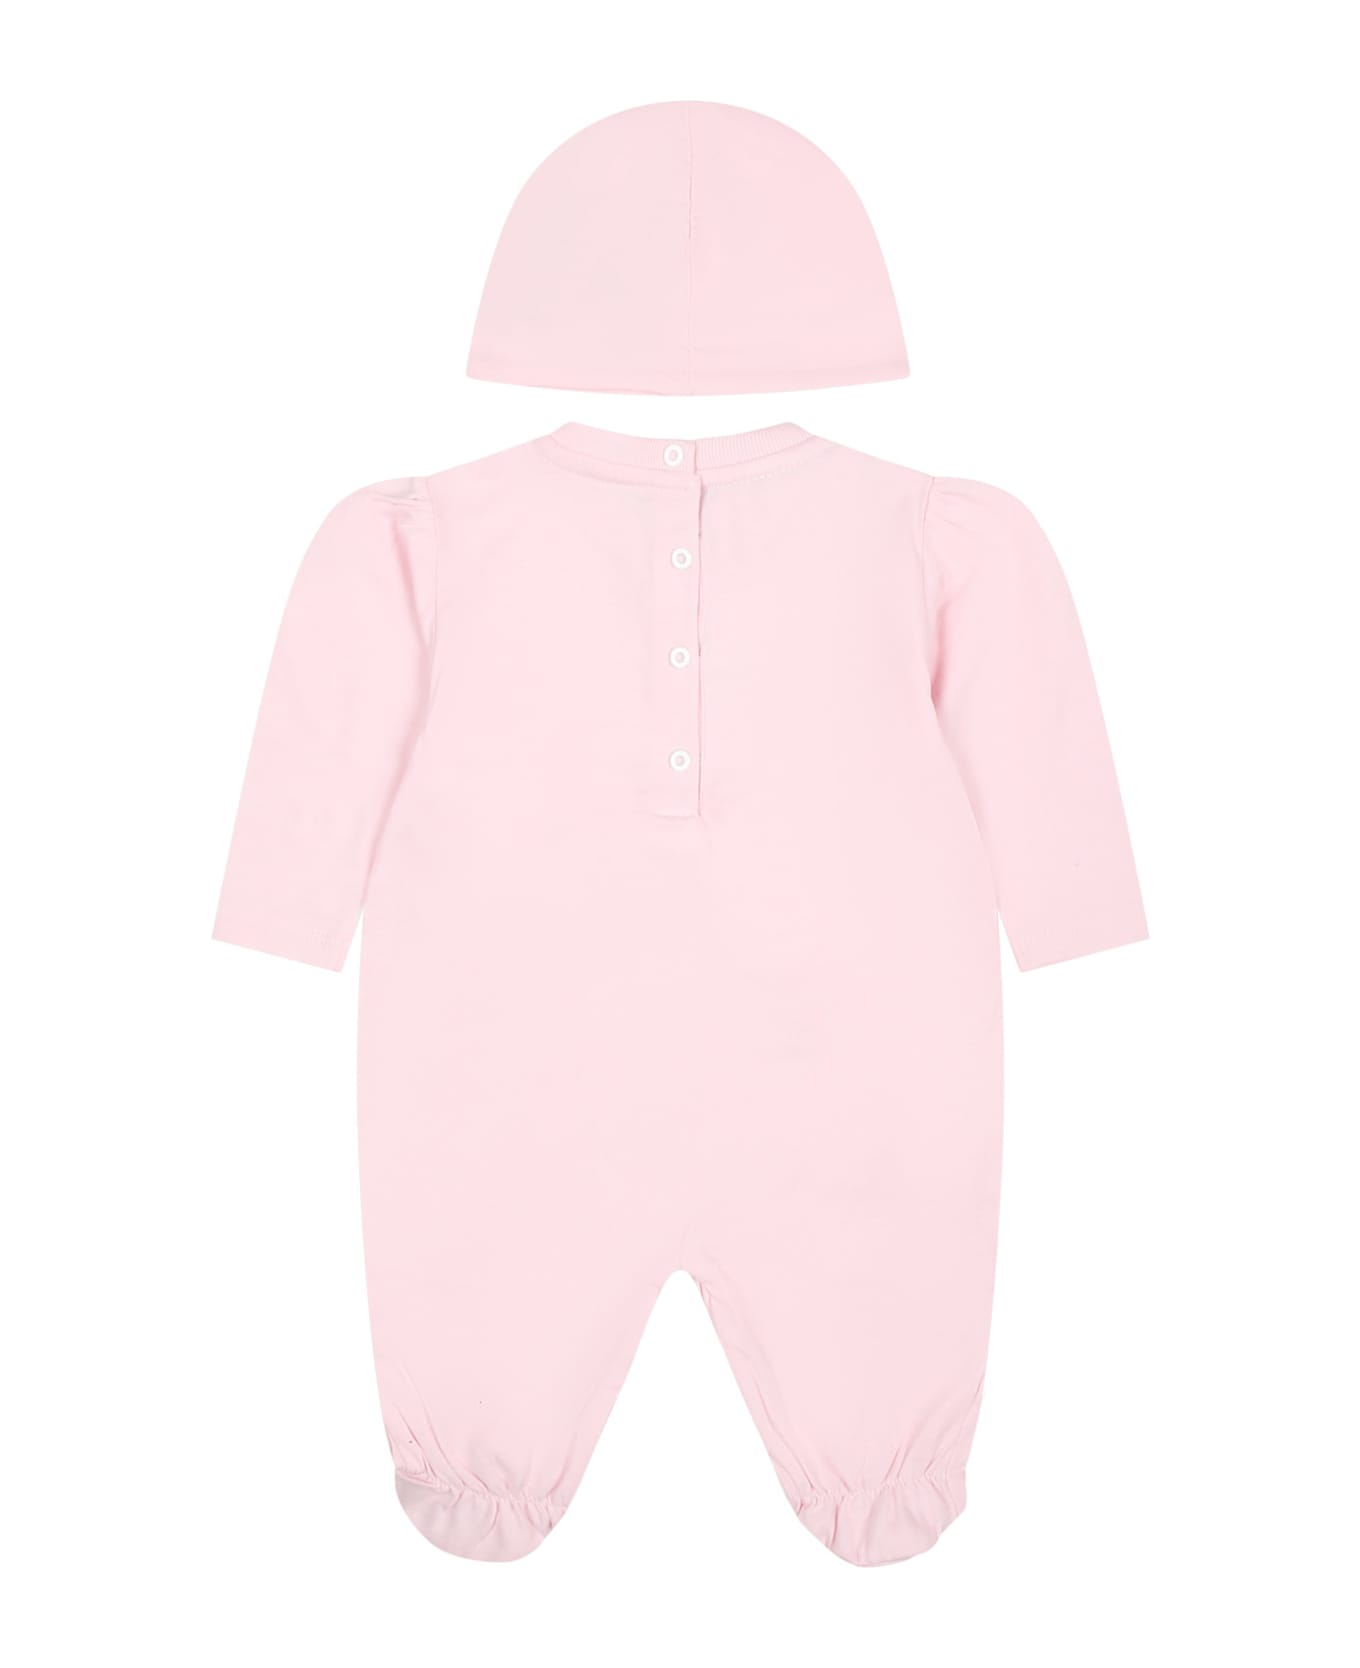 Balmain Pink Babygrown For Baby Girl With Logo - Pink